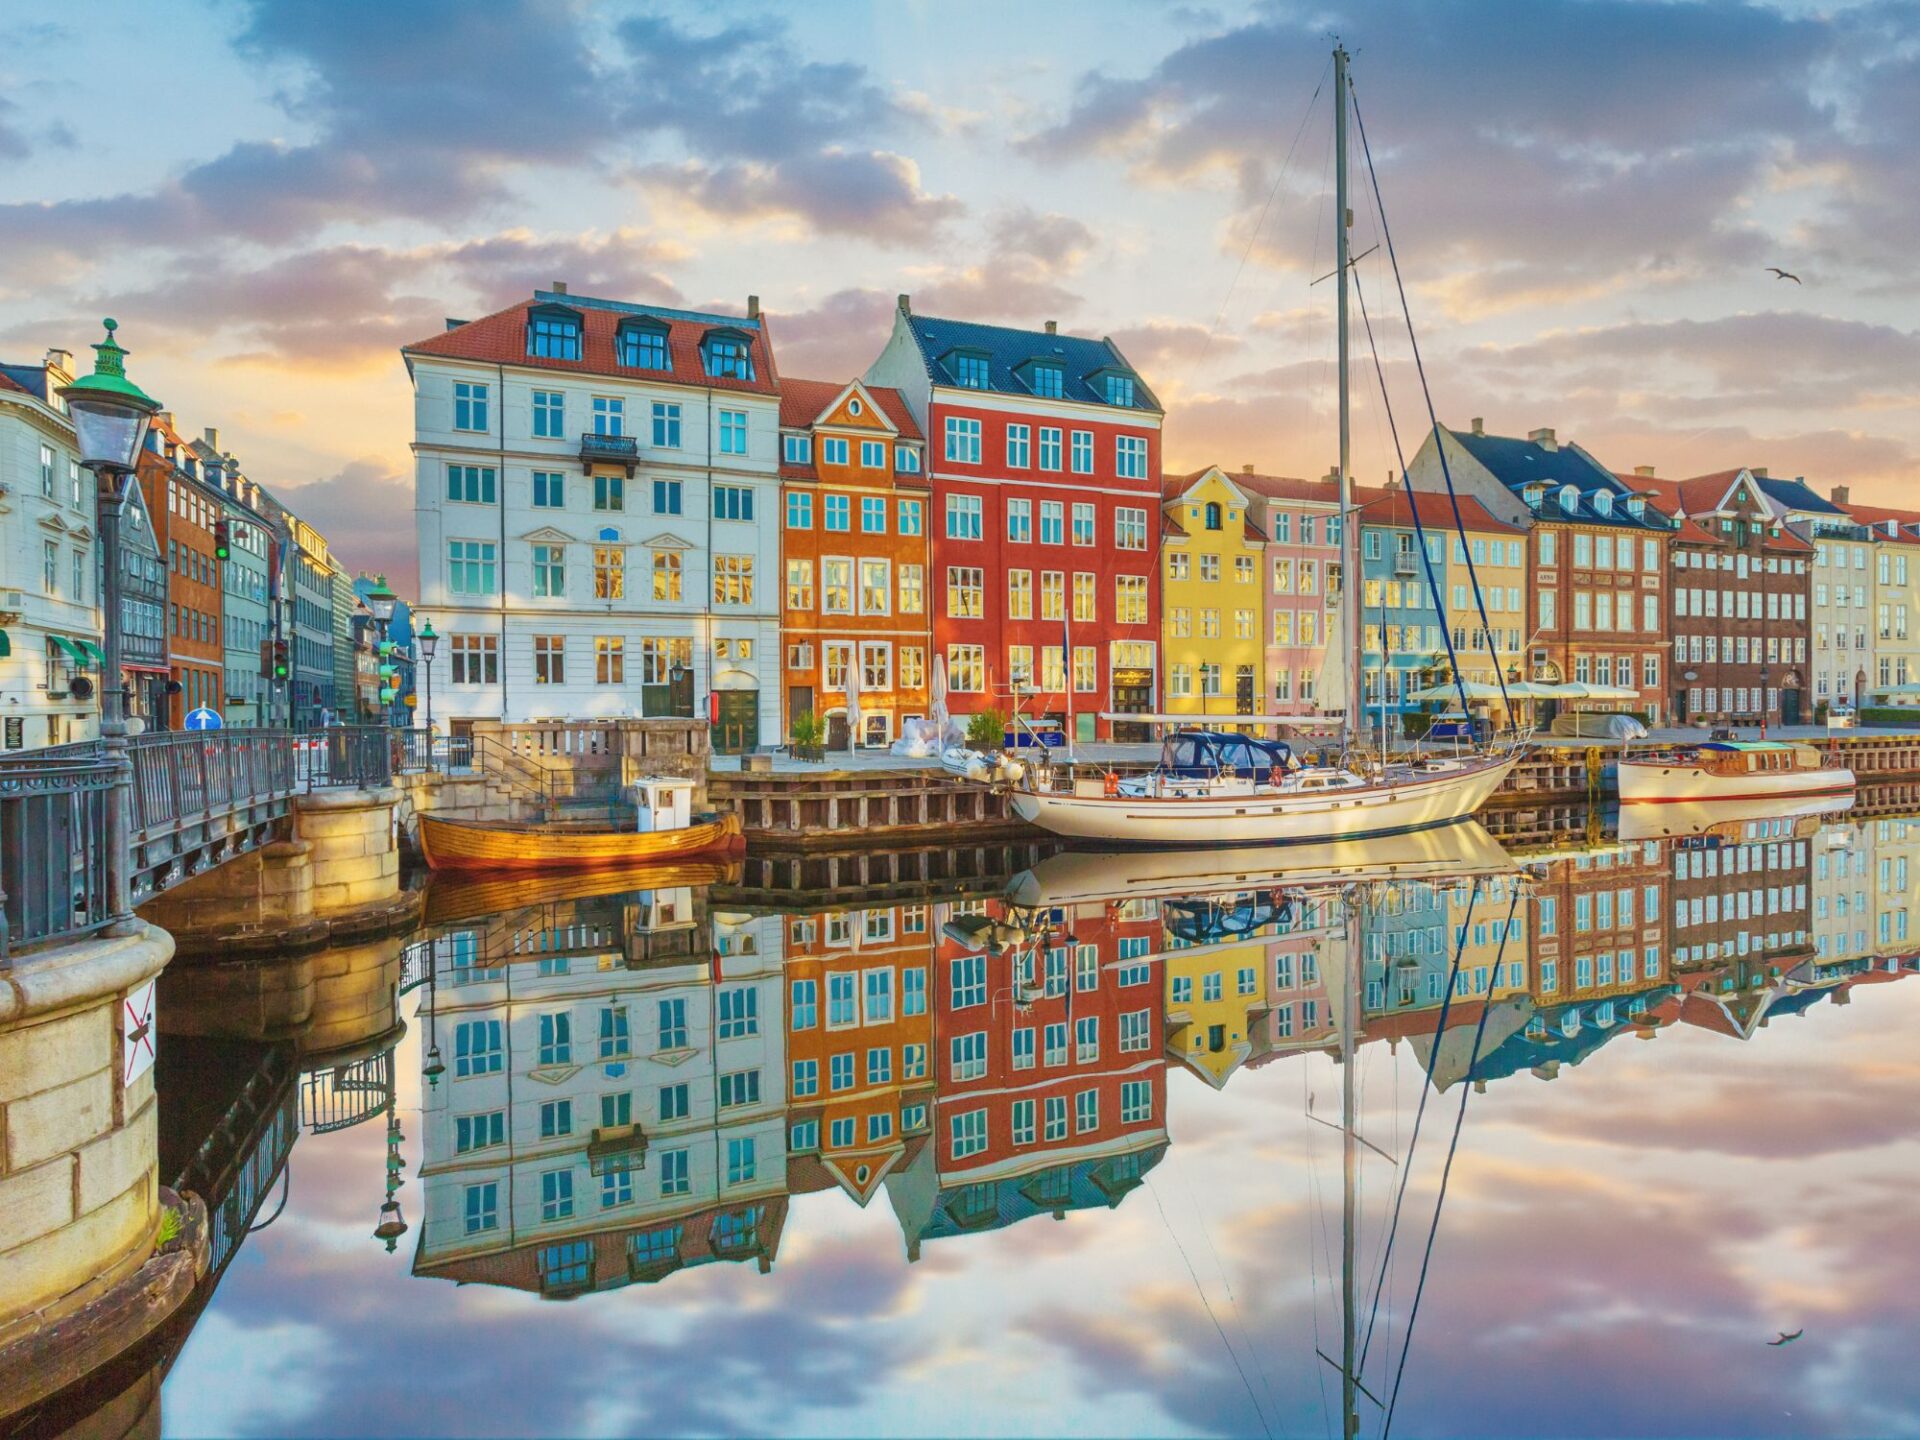 Must visit destinations in Scandinavia - Copenhagen, Denmark